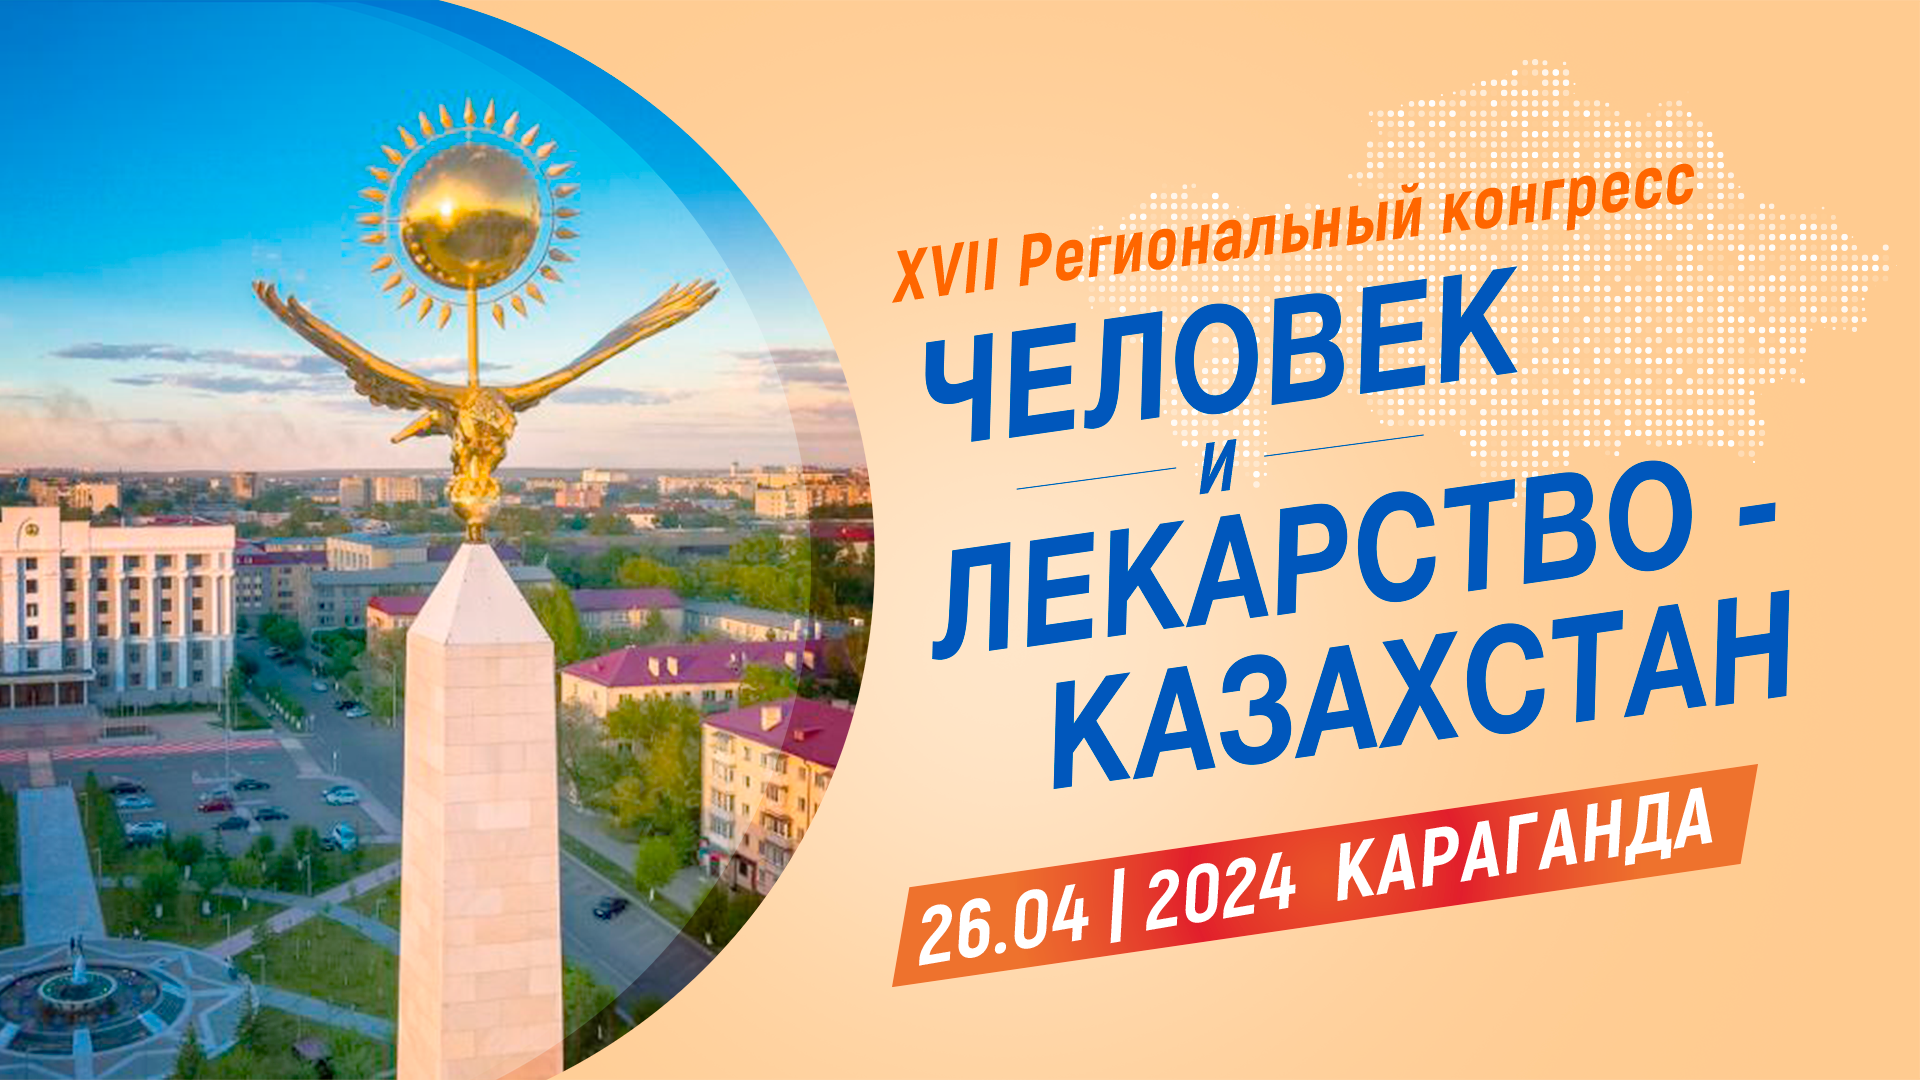 <p>XVII Региональный конгресс &laquo;Человек и Лекарство-Казахстан&raquo;</p>